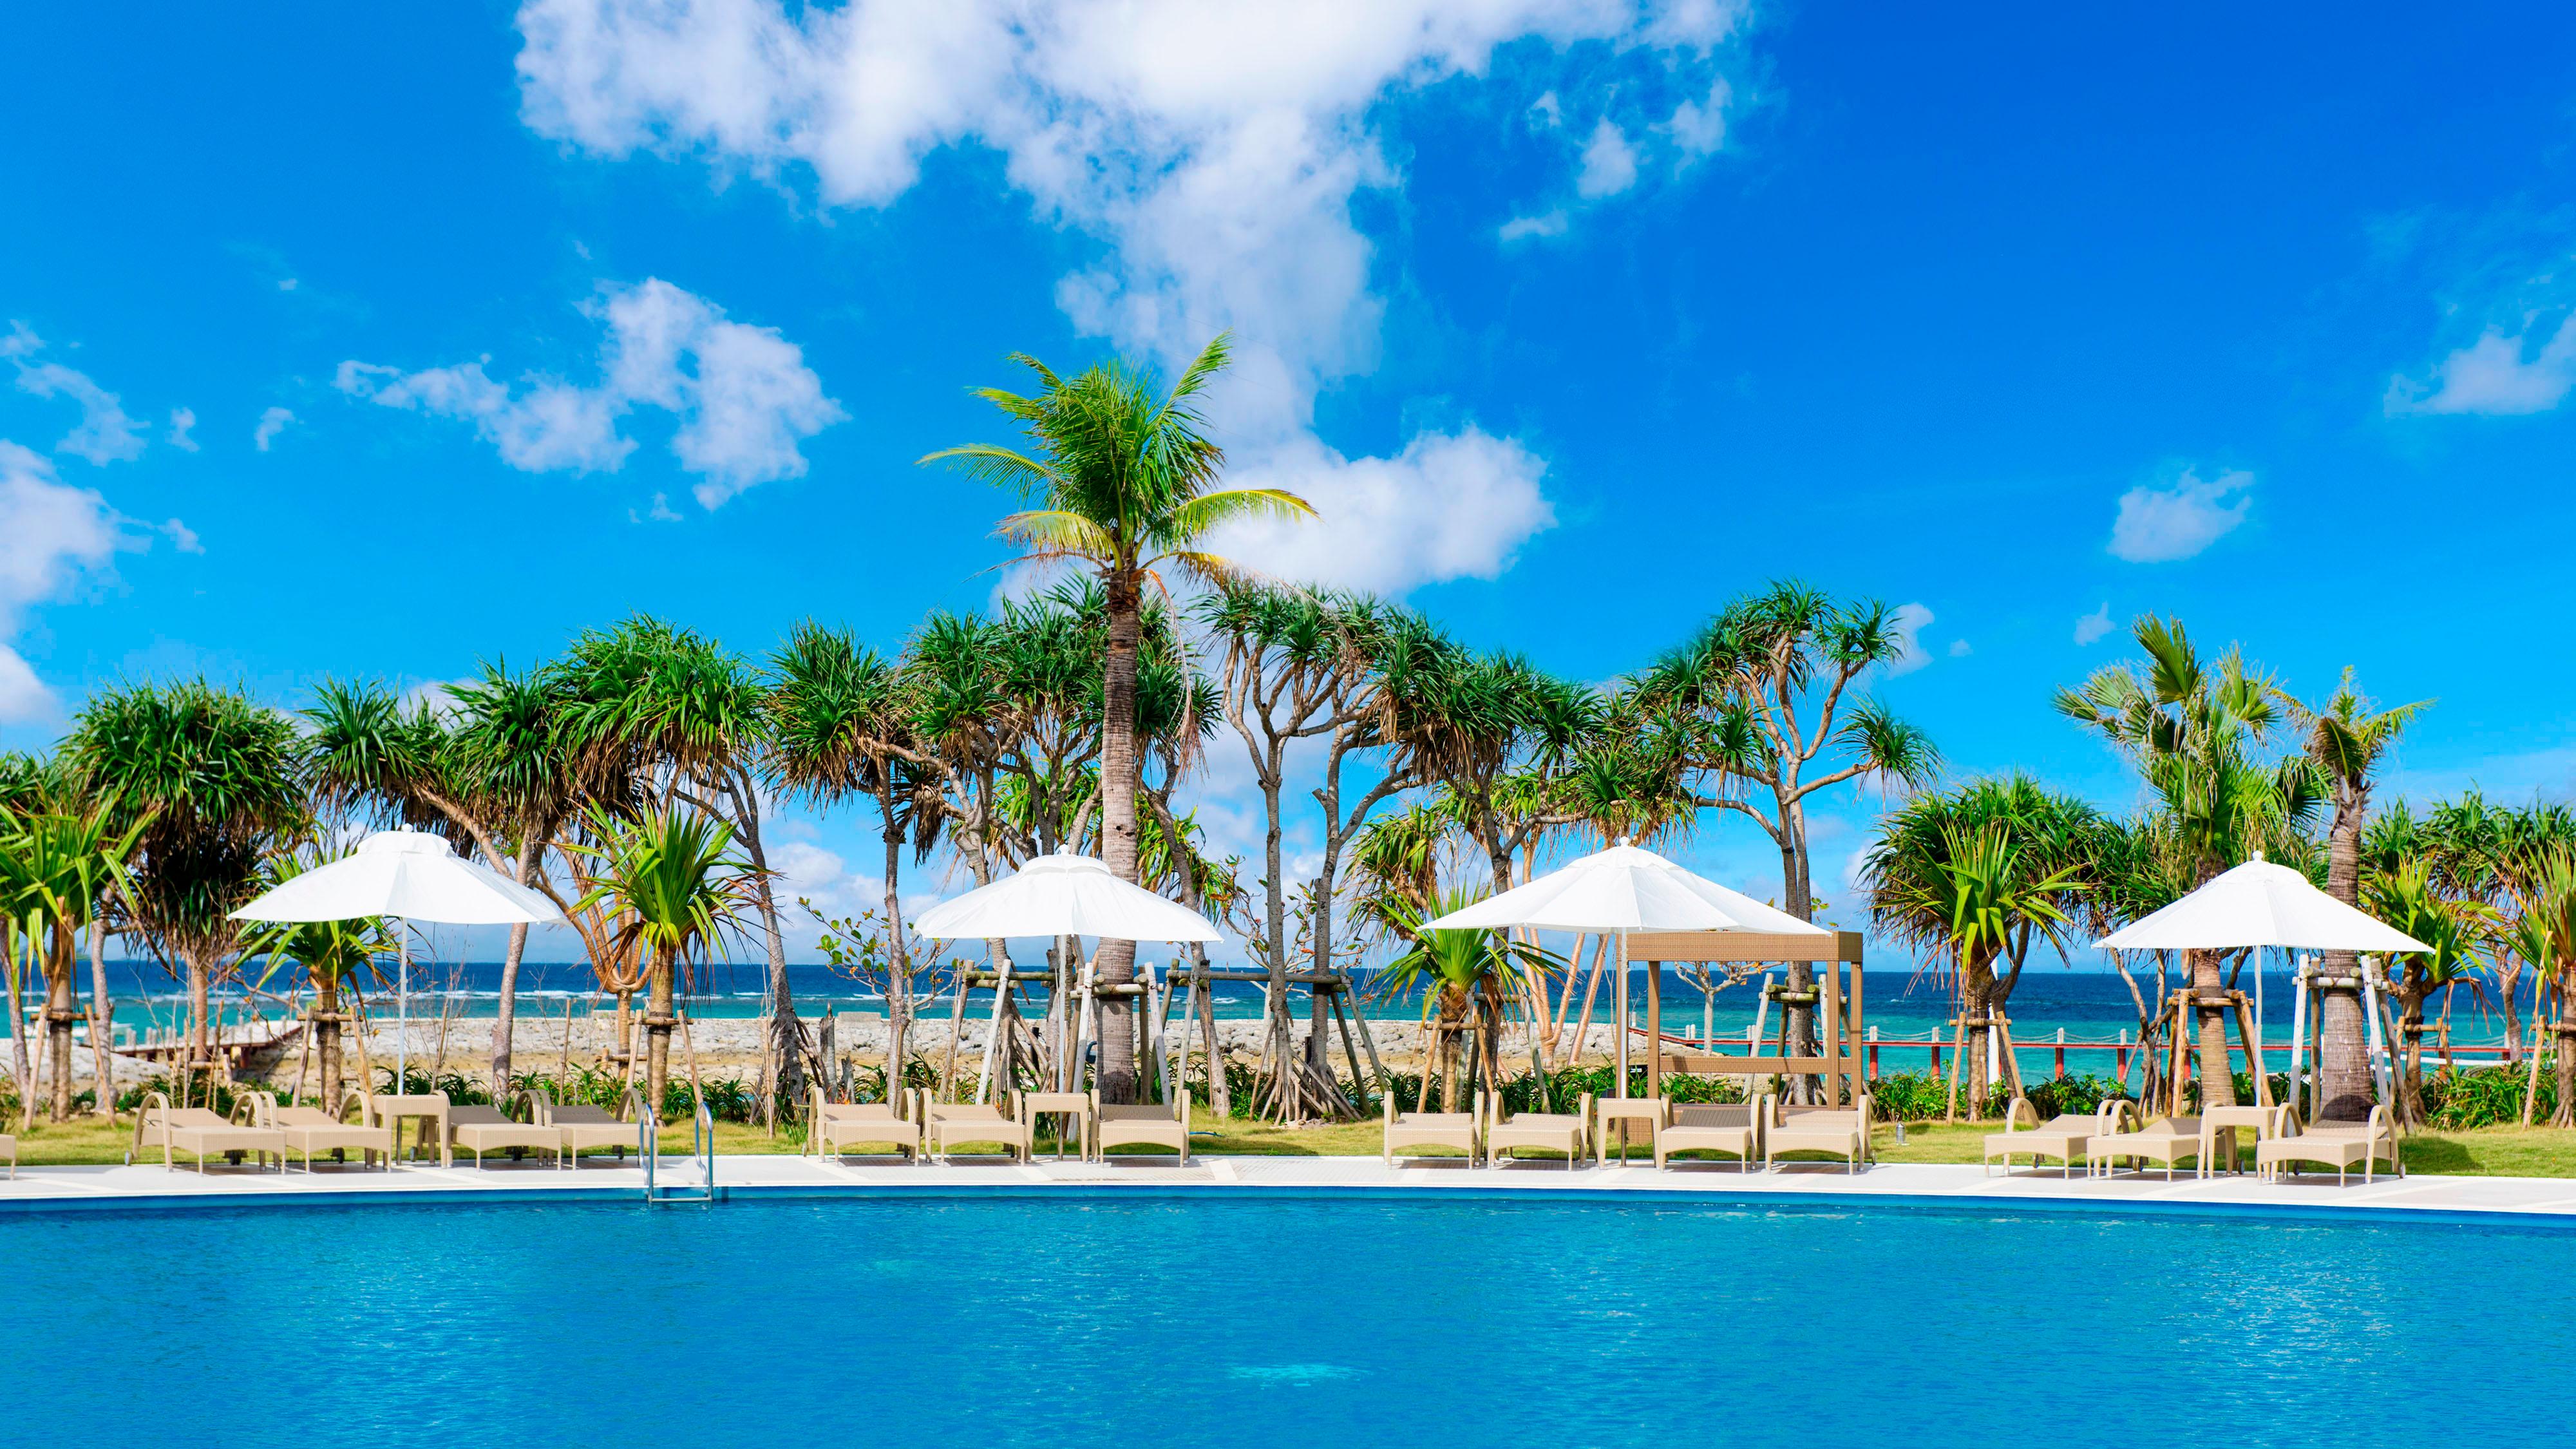 Okinawa Beach Hotel Resort Sheraton Okinawa Sunmarina Resort